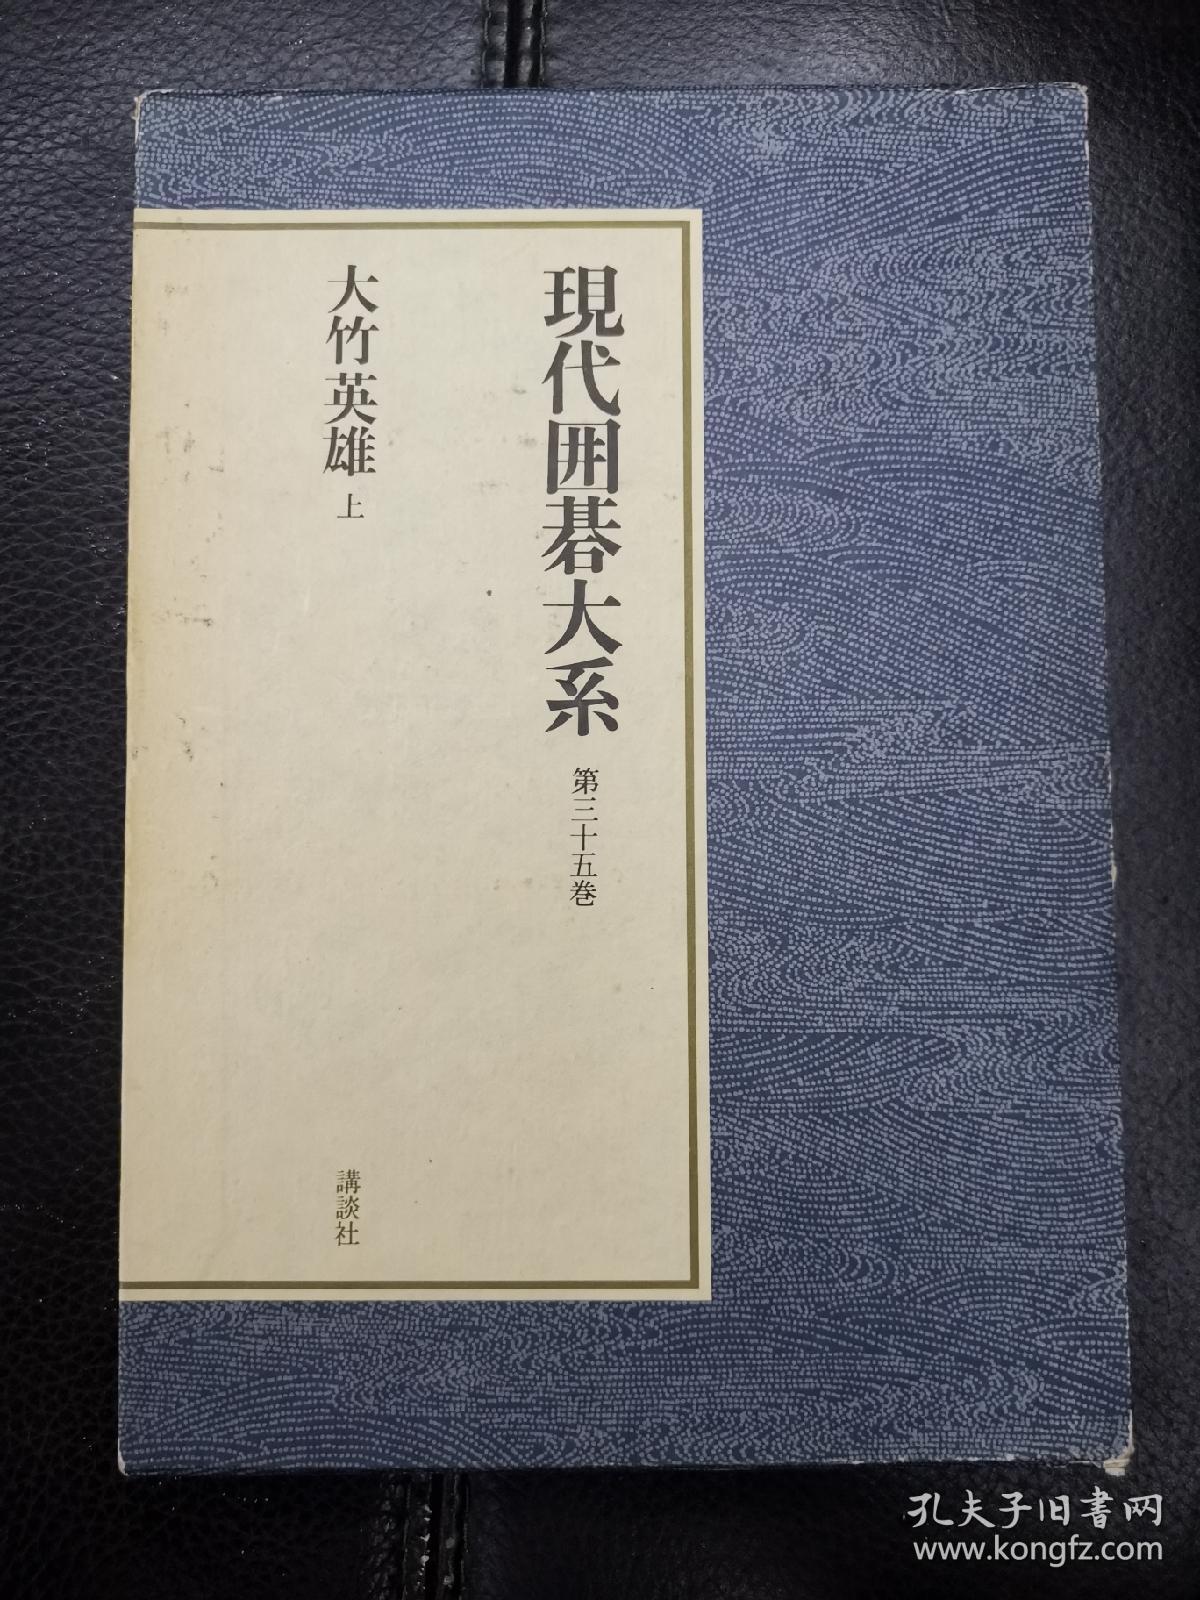 日本回流、日文原版精美围棋书，《现代围棋大系，大竹英雄上》，大32开圆背硬壳精装本，带原装书函，整体保存不错。